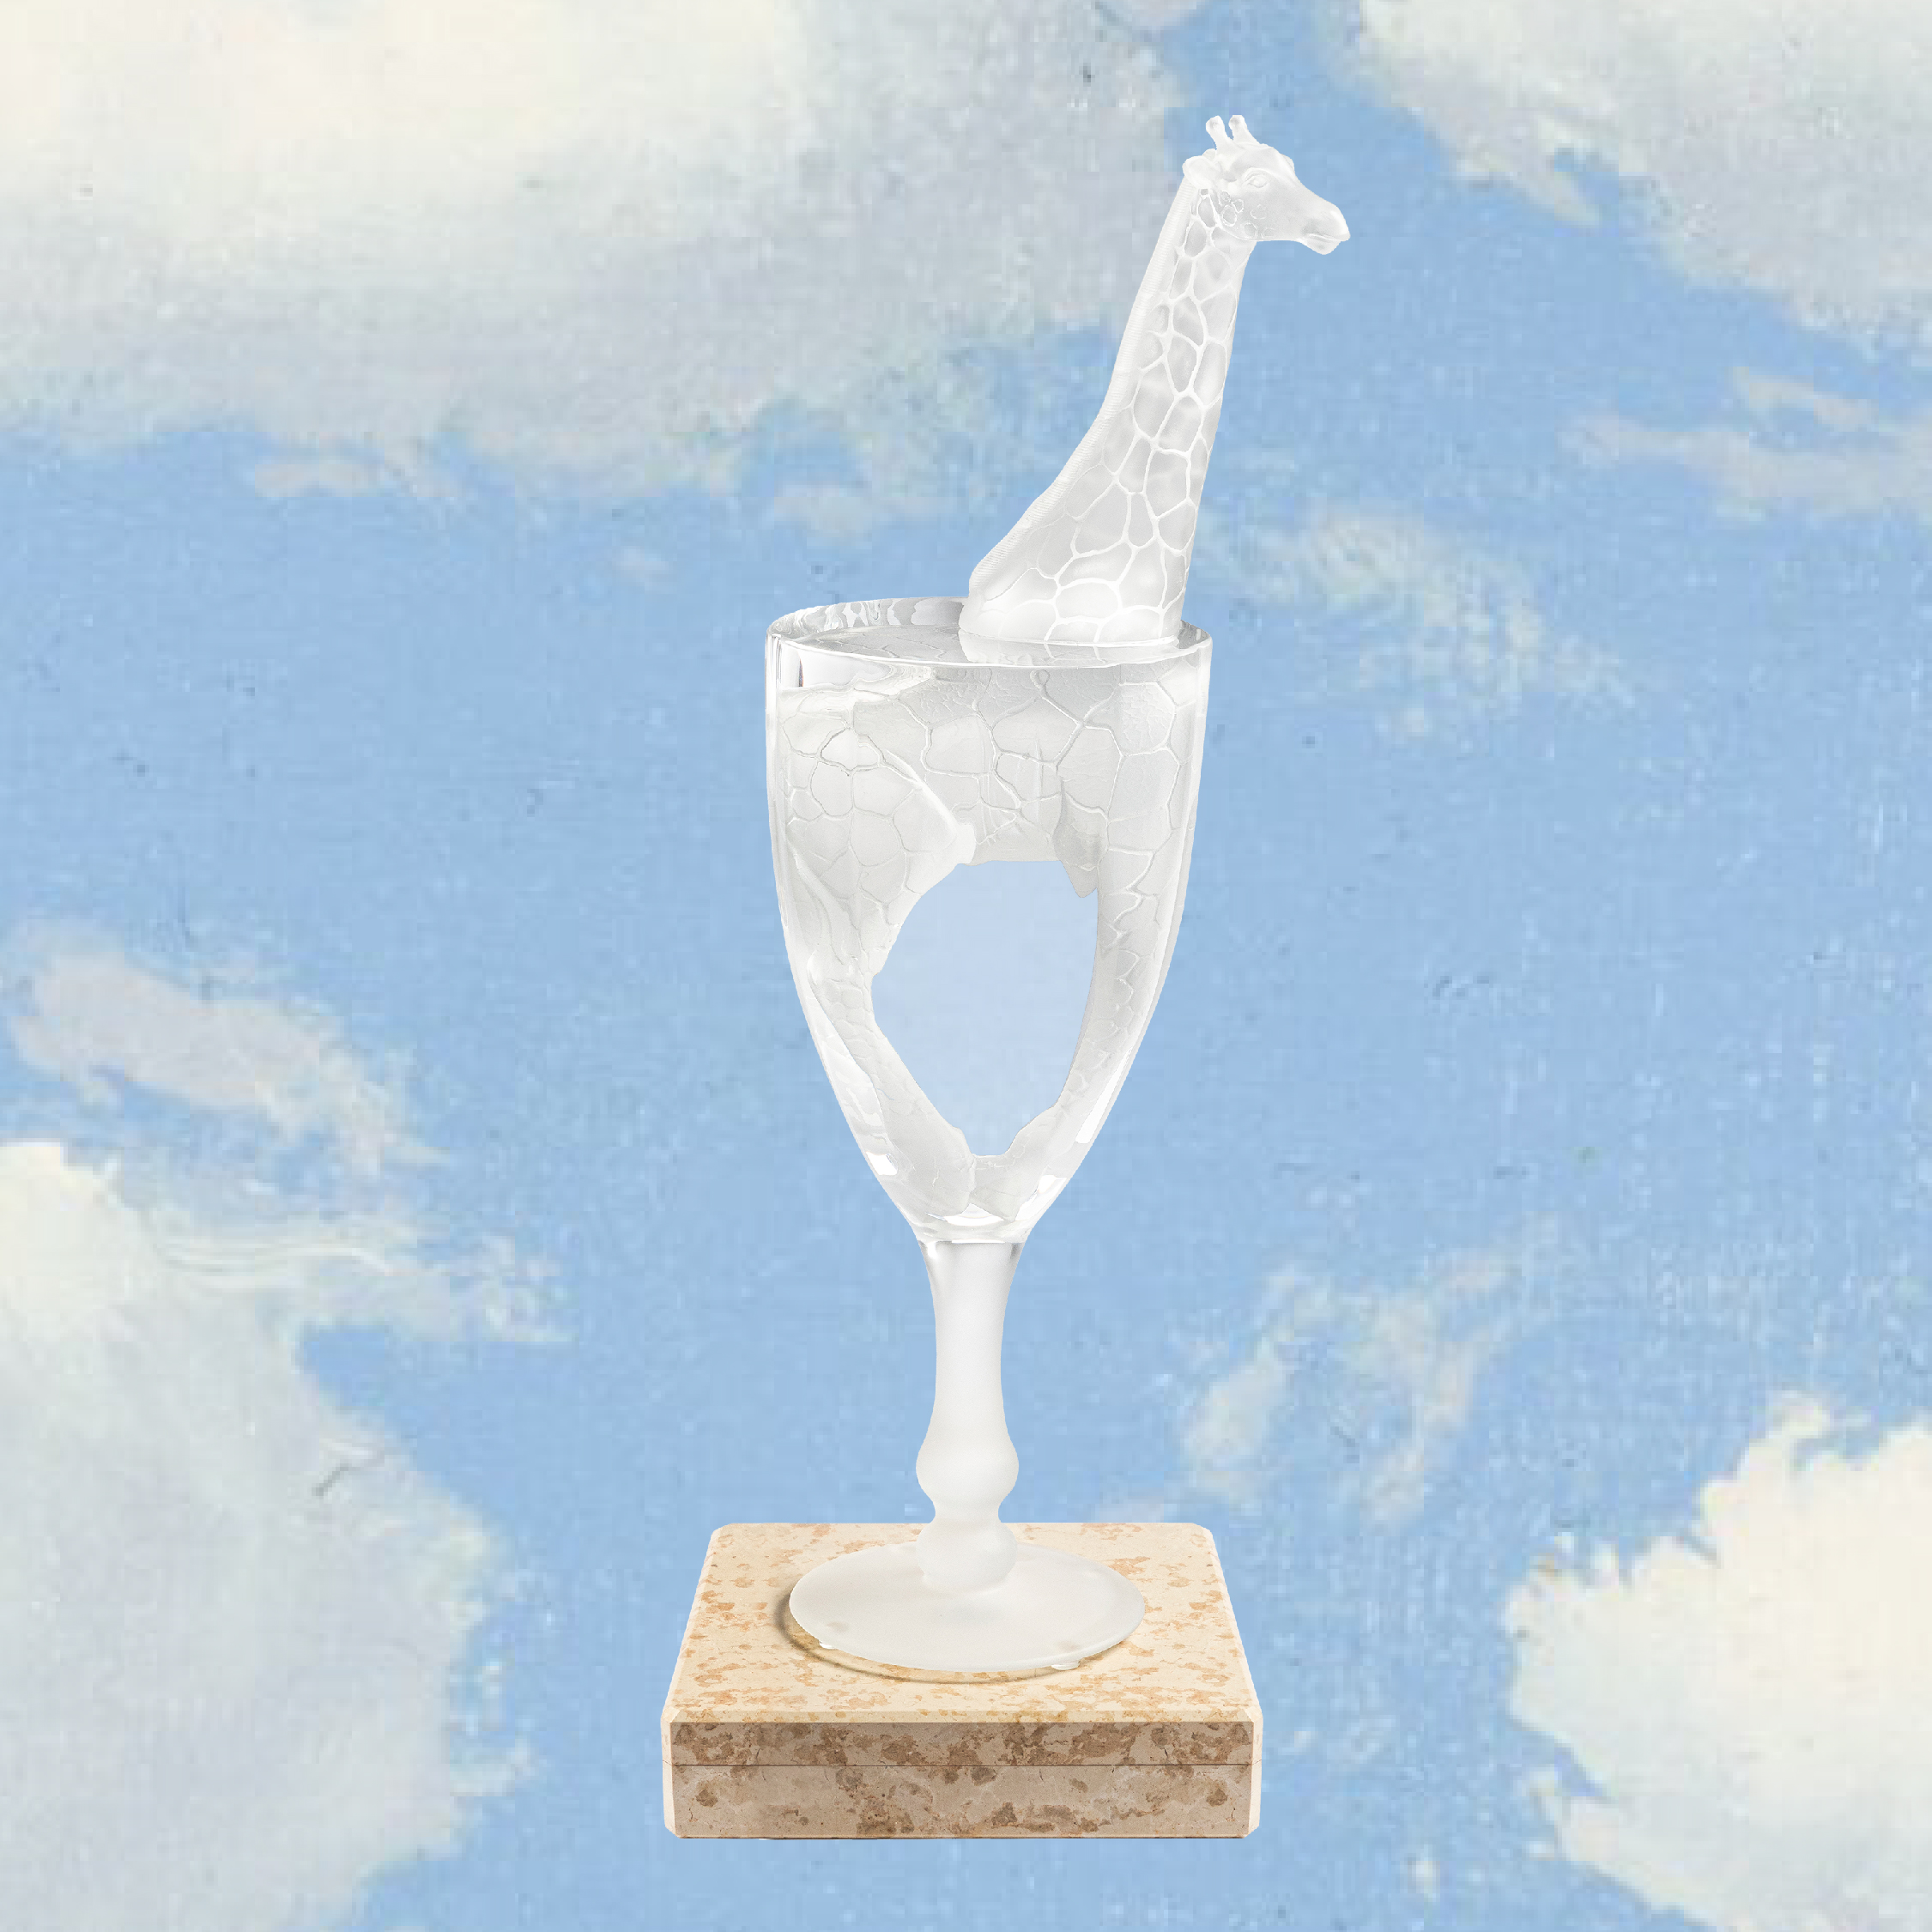 Magritte x Lalique - Bain de Cristal